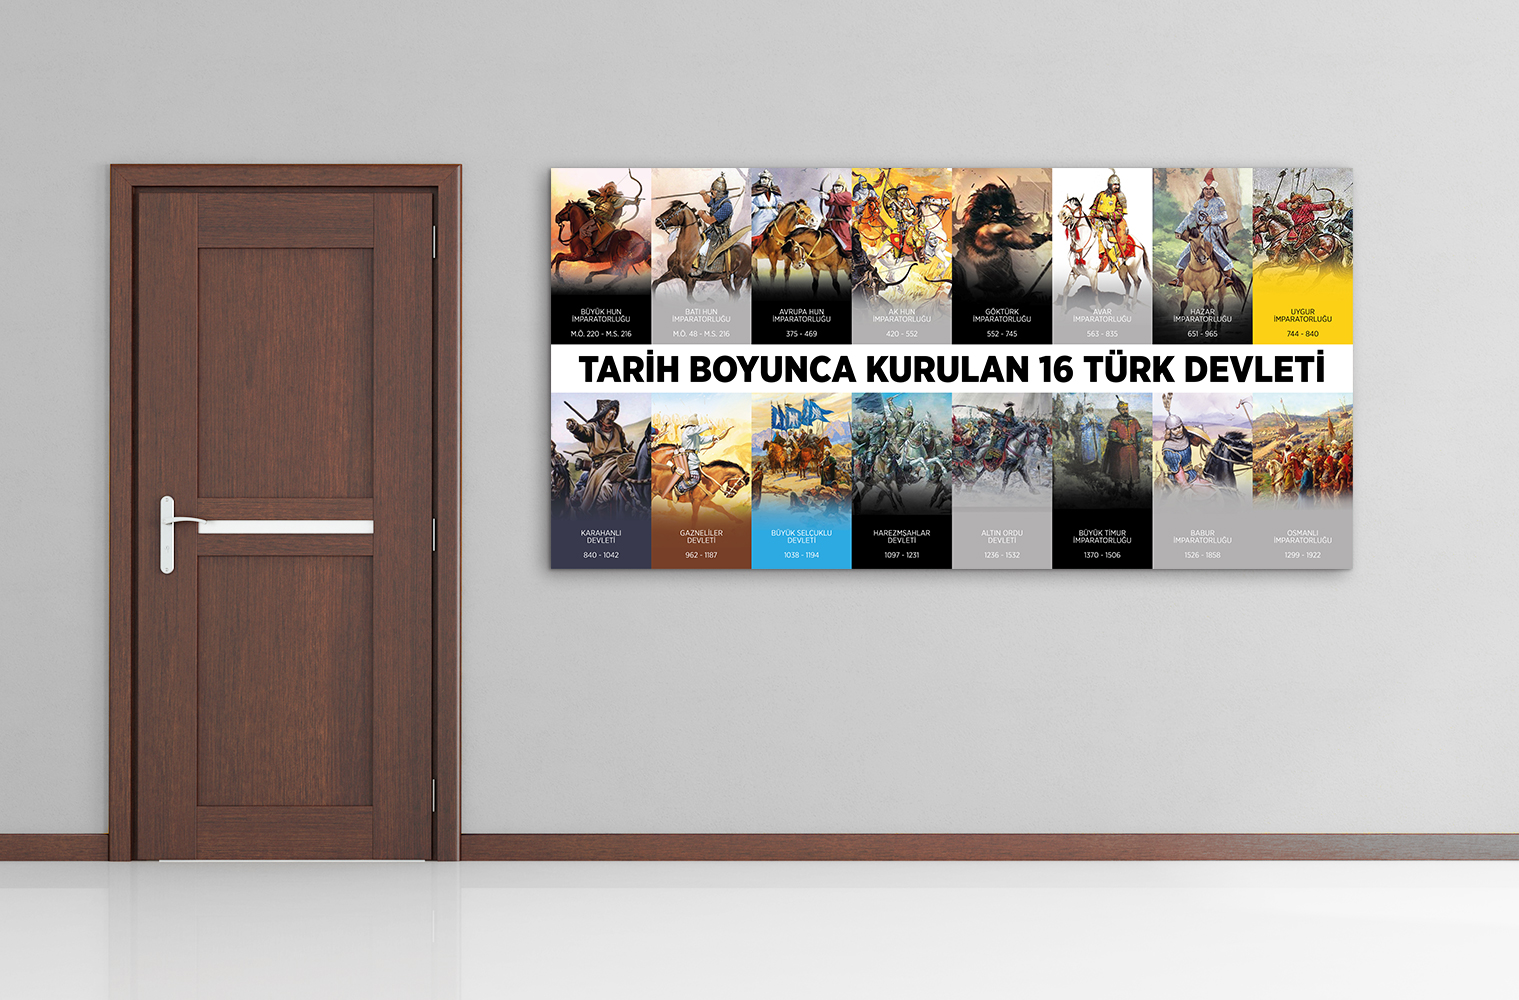 Tarih Boyunca Kurulan 16 Türk Devleti